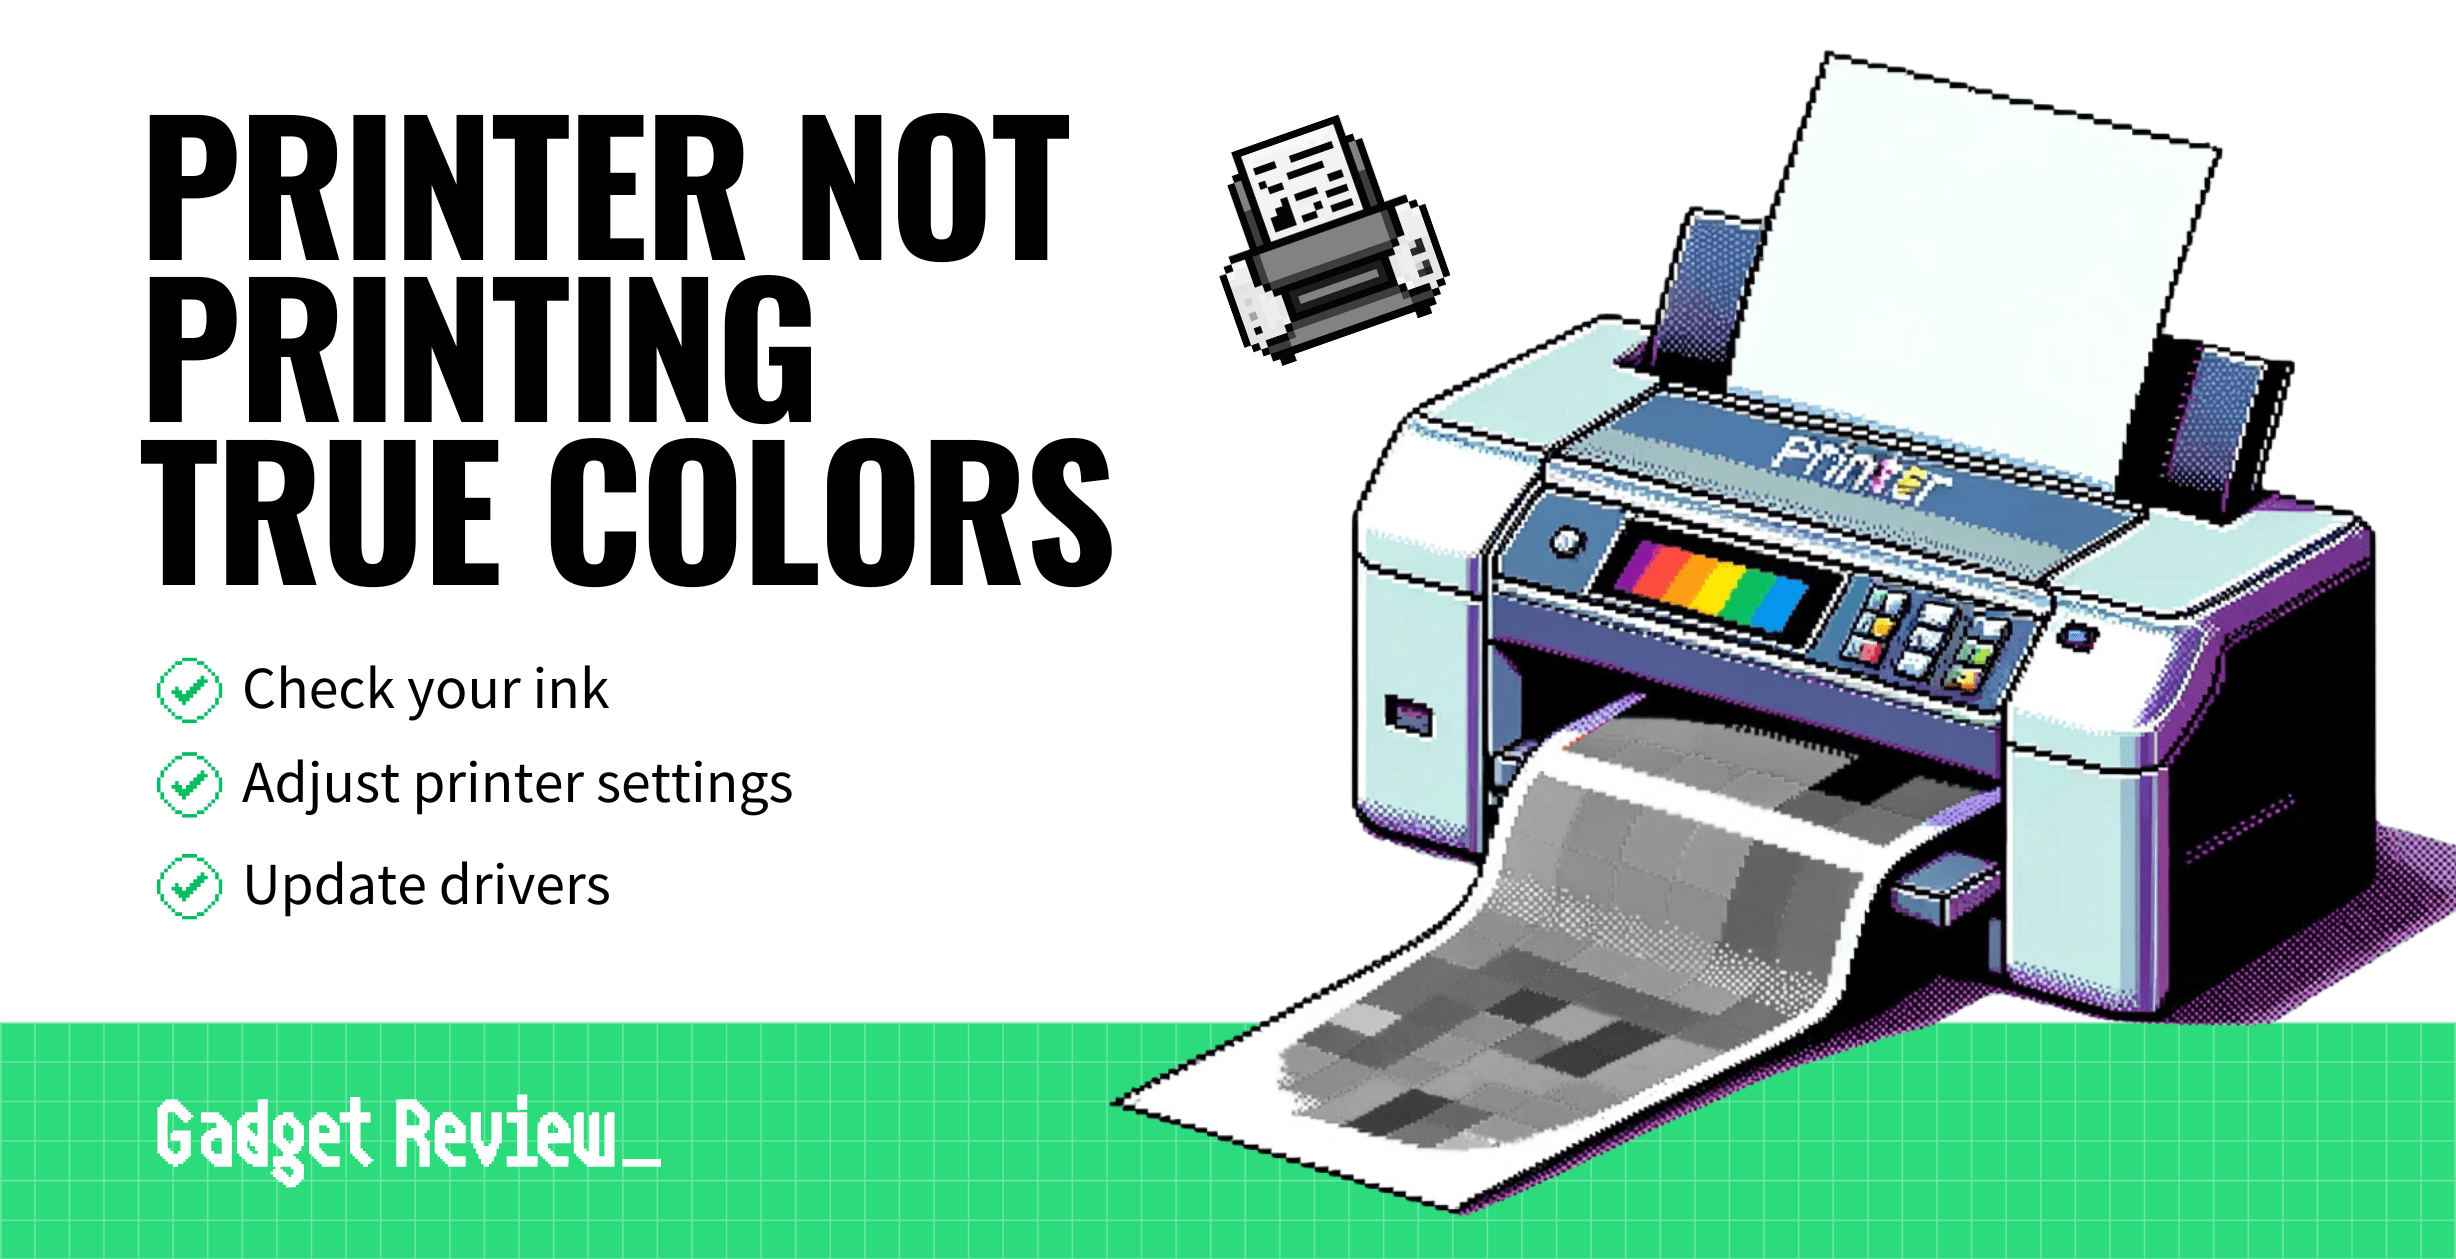 printer not printing true colors guide